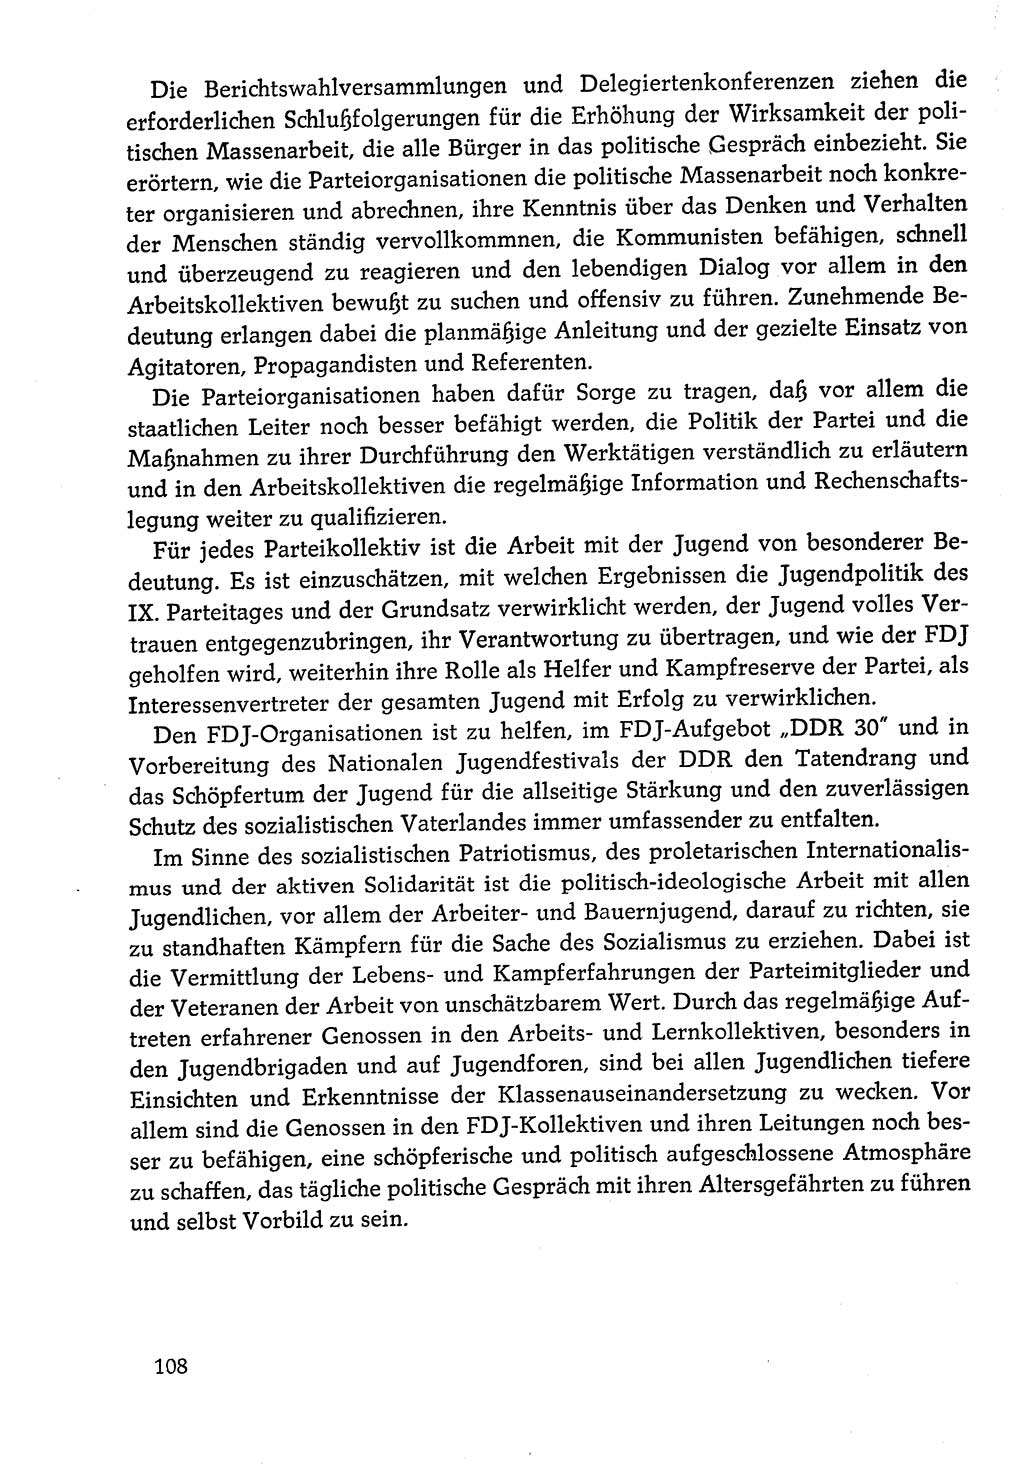 Dokumente der Sozialistischen Einheitspartei Deutschlands (SED) [Deutsche Demokratische Republik (DDR)] 1978-1979, Seite 108 (Dok. SED DDR 1978-1979, S. 108)